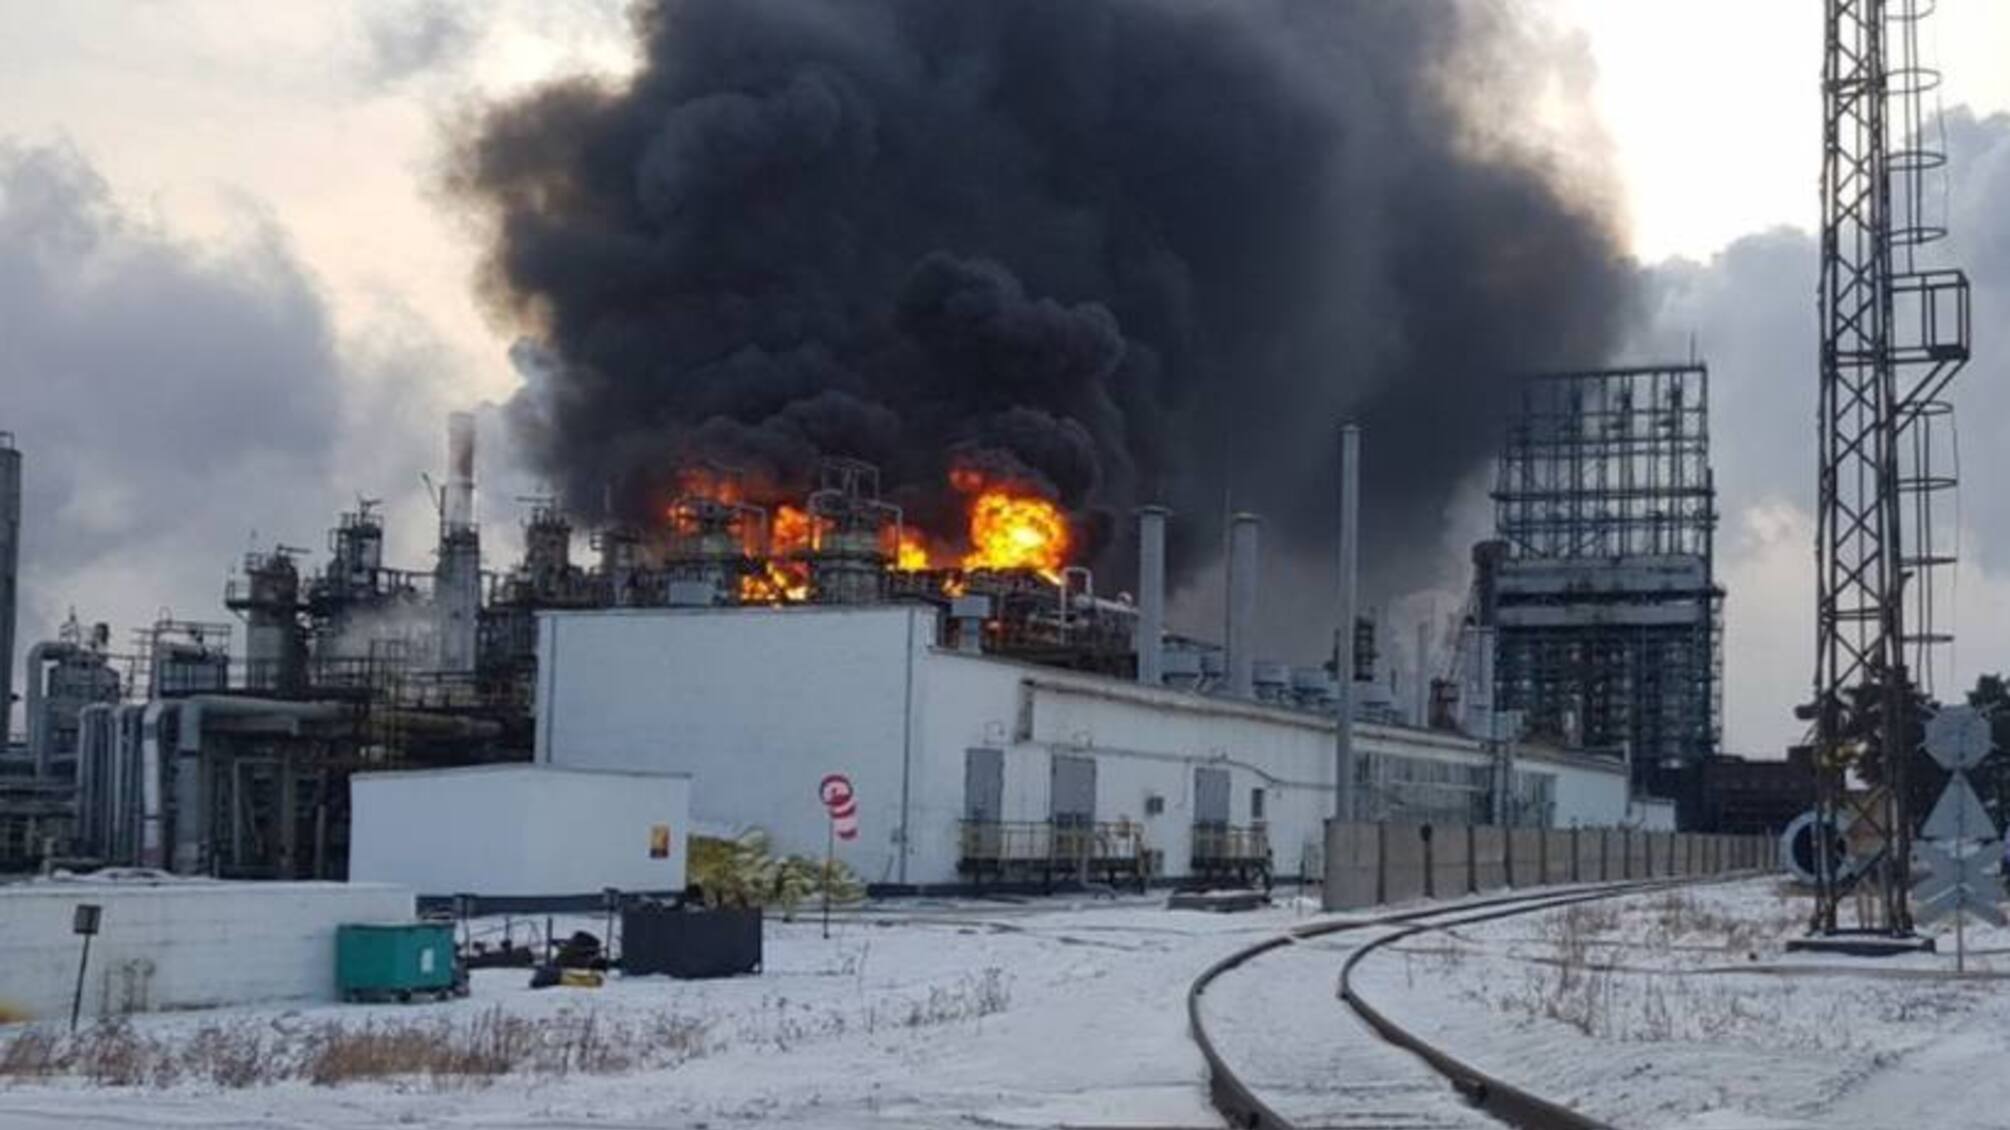 Сибирский хлопок: в российском Ангарске вспыхнул пожар на нефтеперерабатывающем заводе (видео)